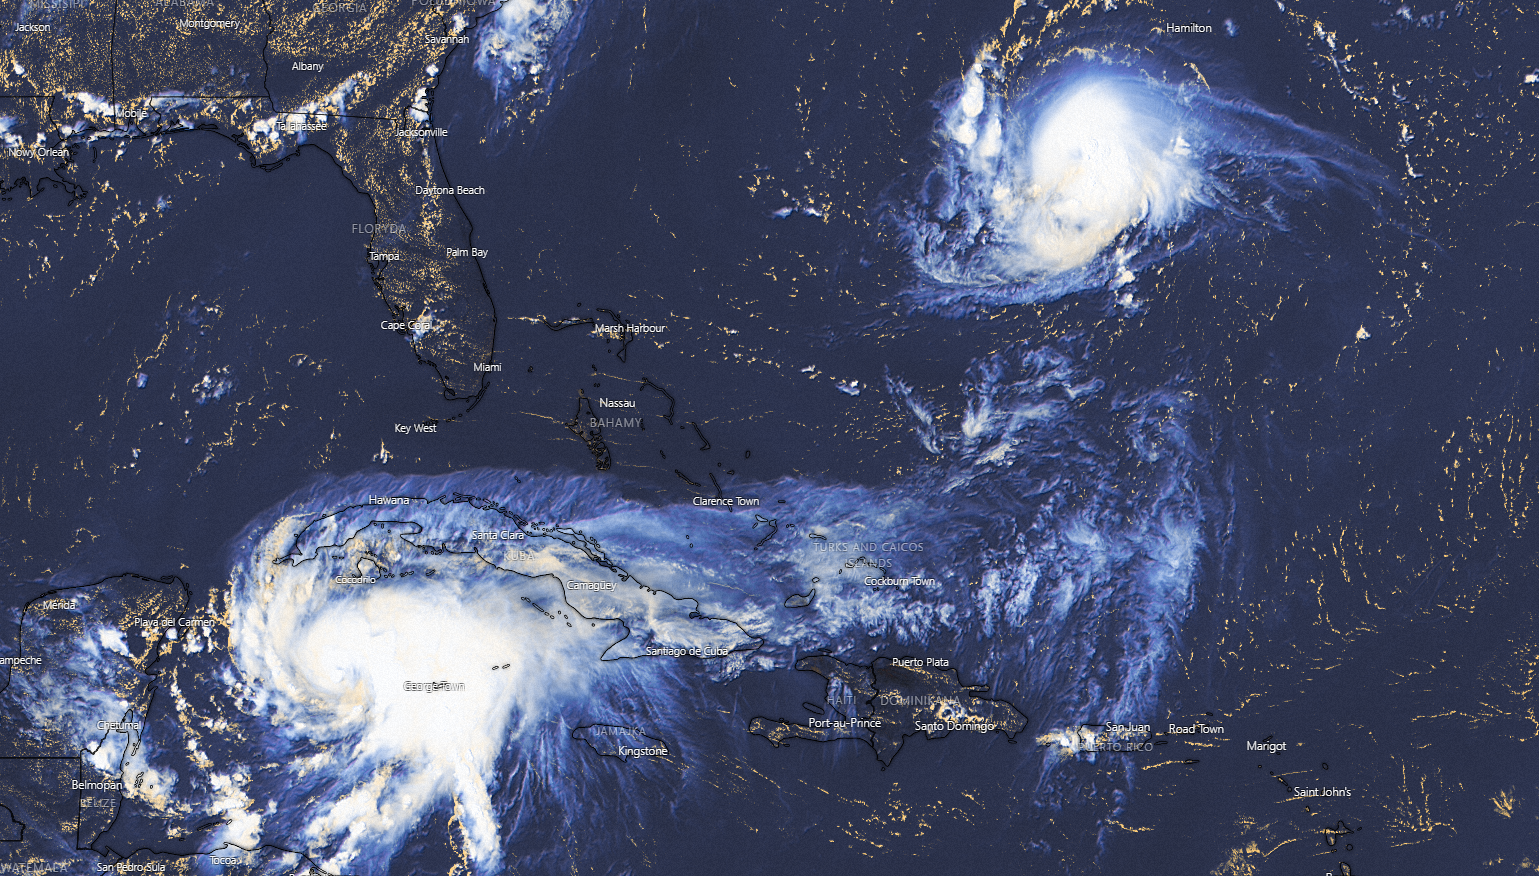 Burze tropikalne HENRI i GRACE widoczne na obrazie satelitarnym. źródło: windy.com